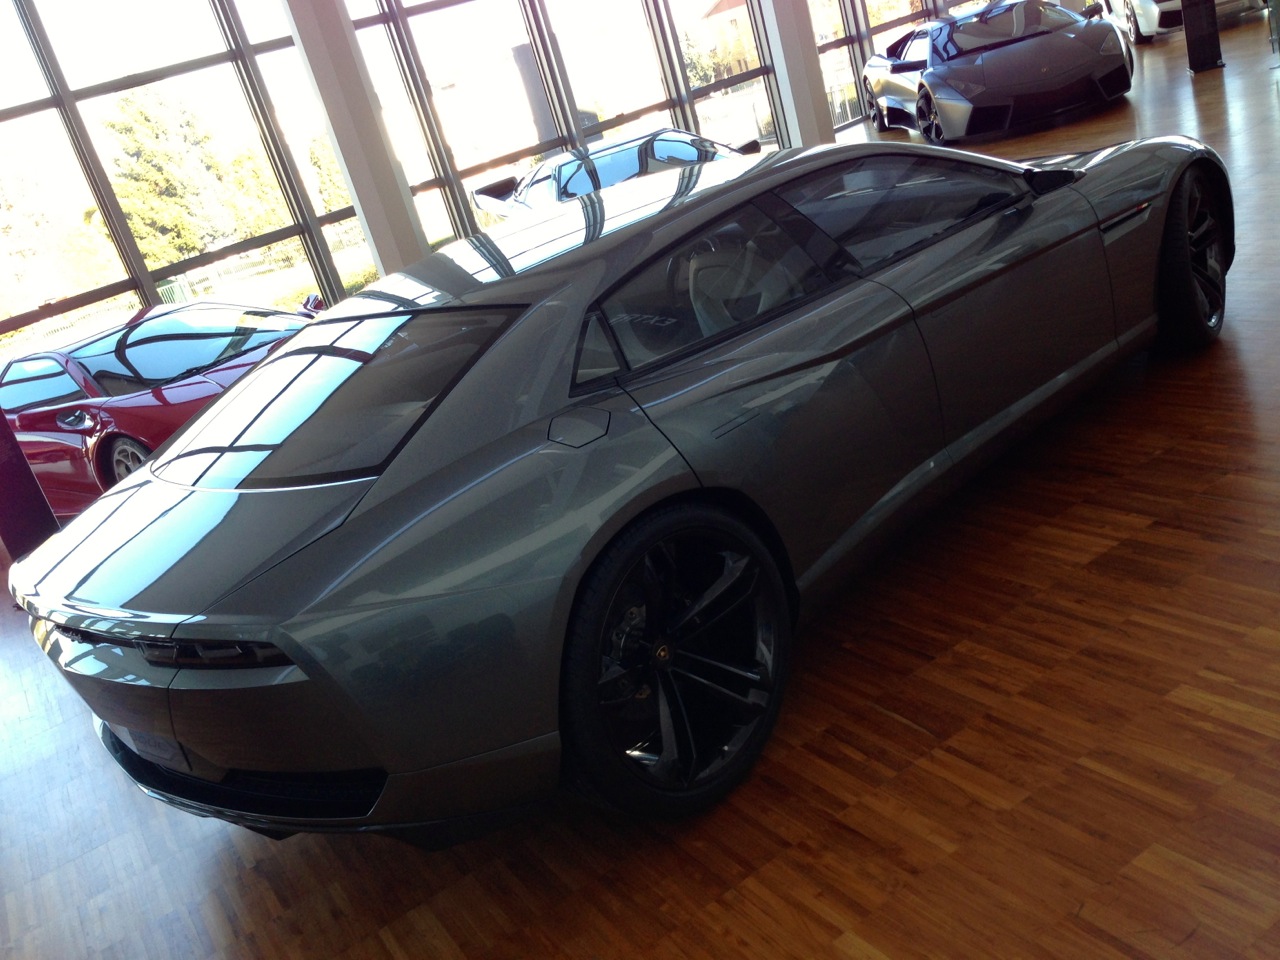 Lamborghini Estoque 4 Door Concept - Ed Bolian